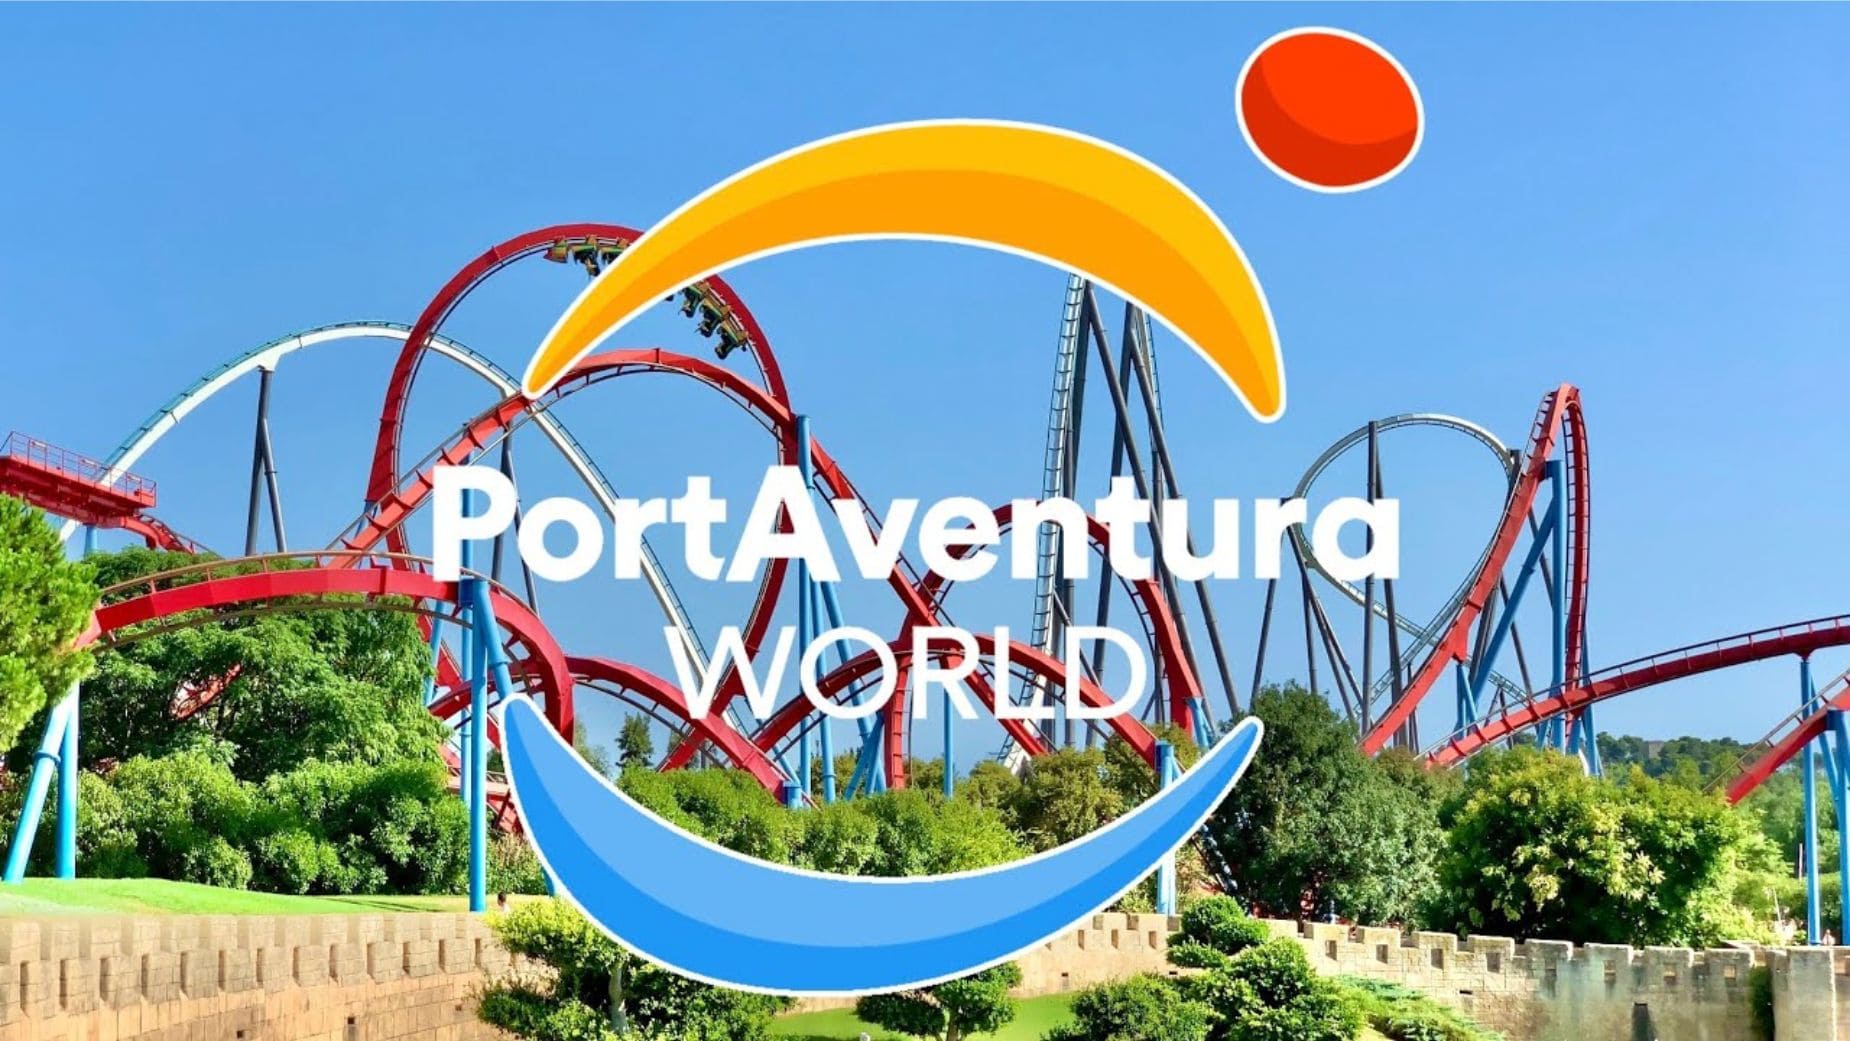 Port Aventura World recibe el premio Fitur 4all a 'Empresa Inclusiva' por su accesibilidad